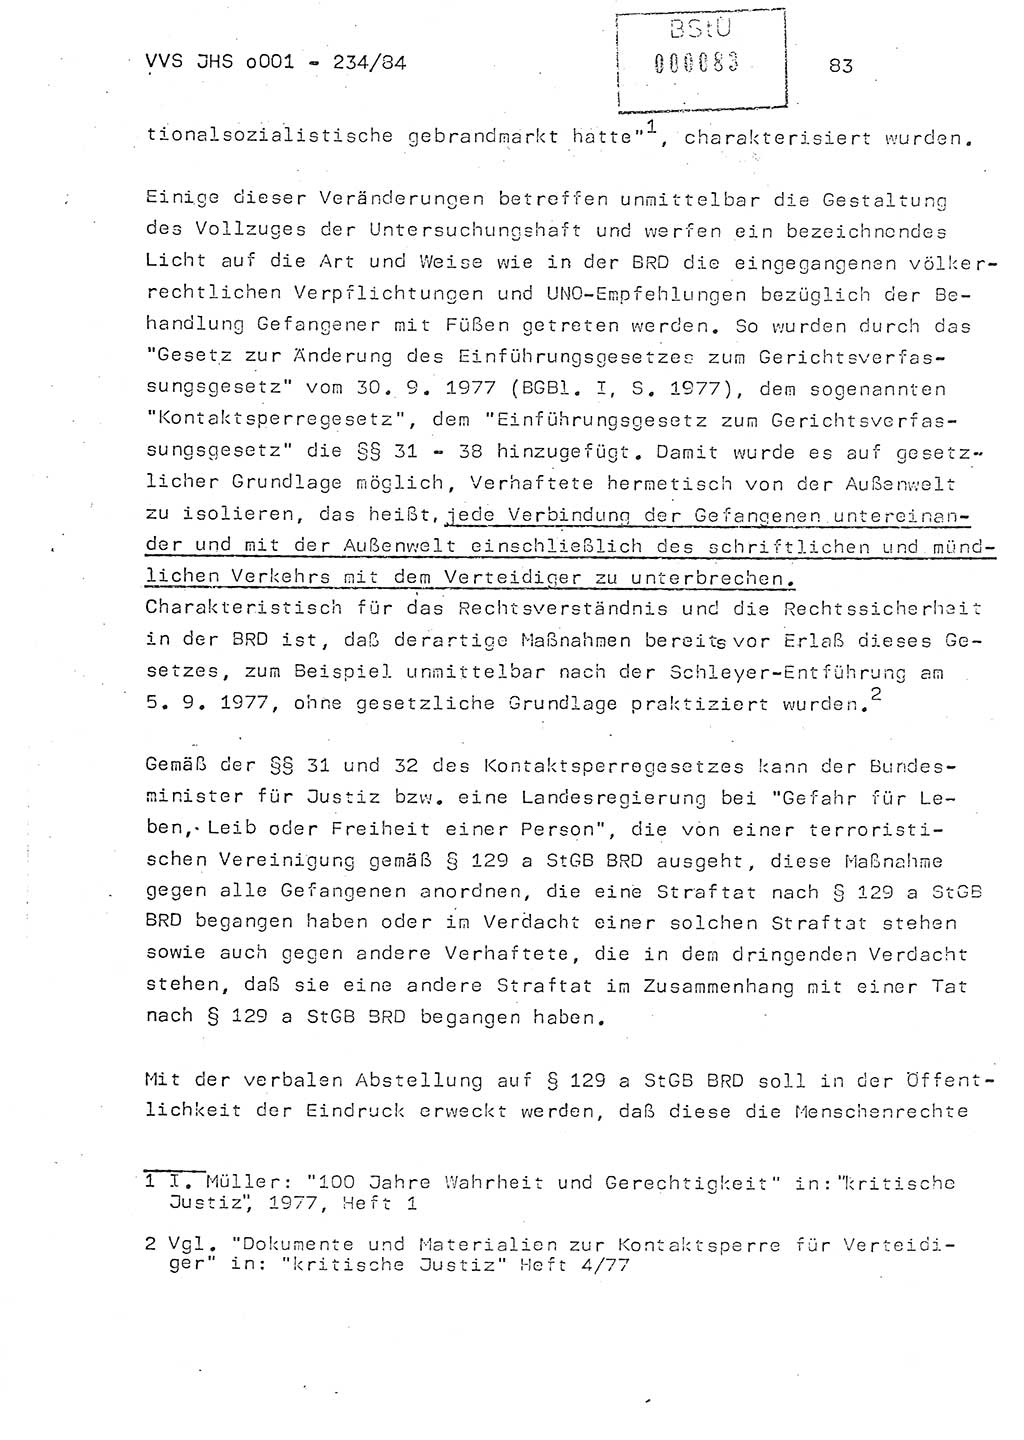 Dissertation Oberst Siegfried Rataizick (Abt. ⅩⅣ), Oberstleutnant Volkmar Heinz (Abt. ⅩⅣ), Oberstleutnant Werner Stein (HA Ⅸ), Hauptmann Heinz Conrad (JHS), Ministerium für Staatssicherheit (MfS) [Deutsche Demokratische Republik (DDR)], Juristische Hochschule (JHS), Vertrauliche Verschlußsache (VVS) o001-234/84, Potsdam 1984, Seite 83 (Diss. MfS DDR JHS VVS o001-234/84 1984, S. 83)